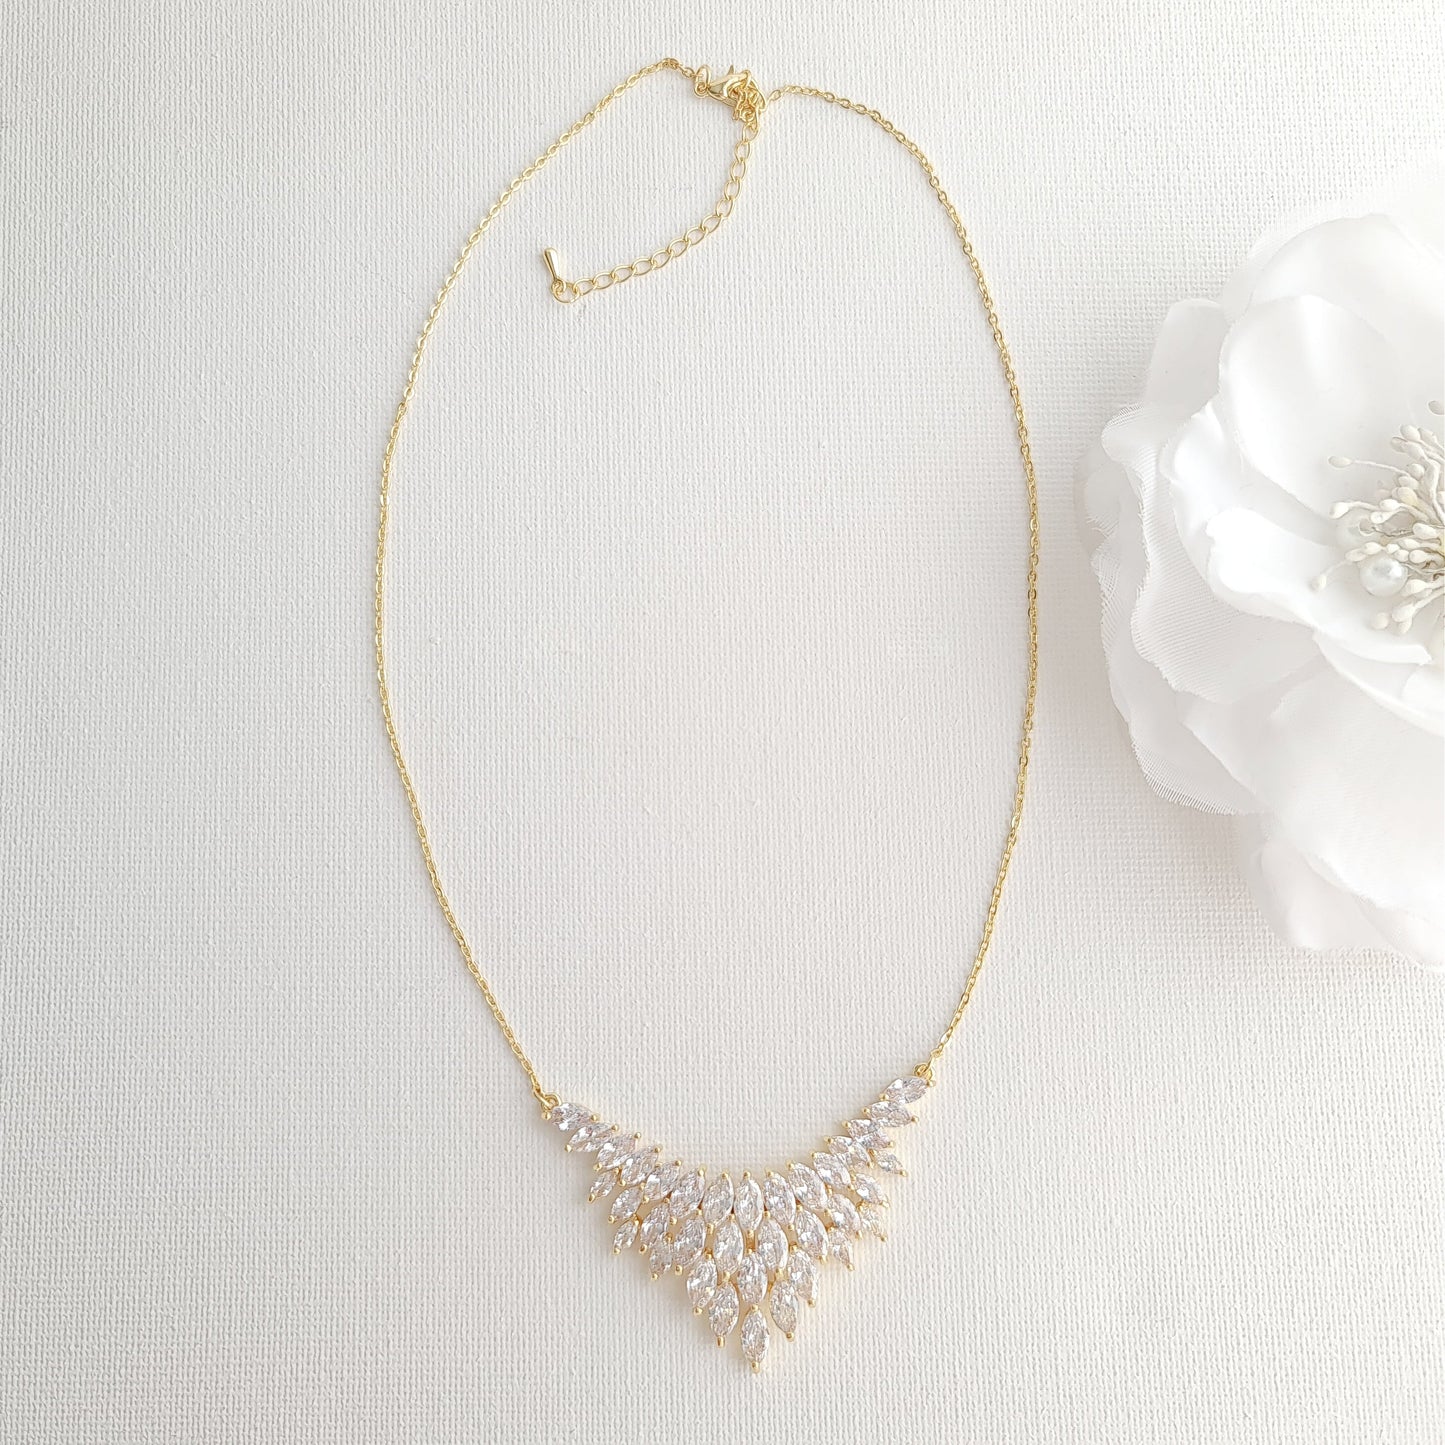 Rose Gold Jewelry Set of Earrings, Necklace, Bracelet -Belle